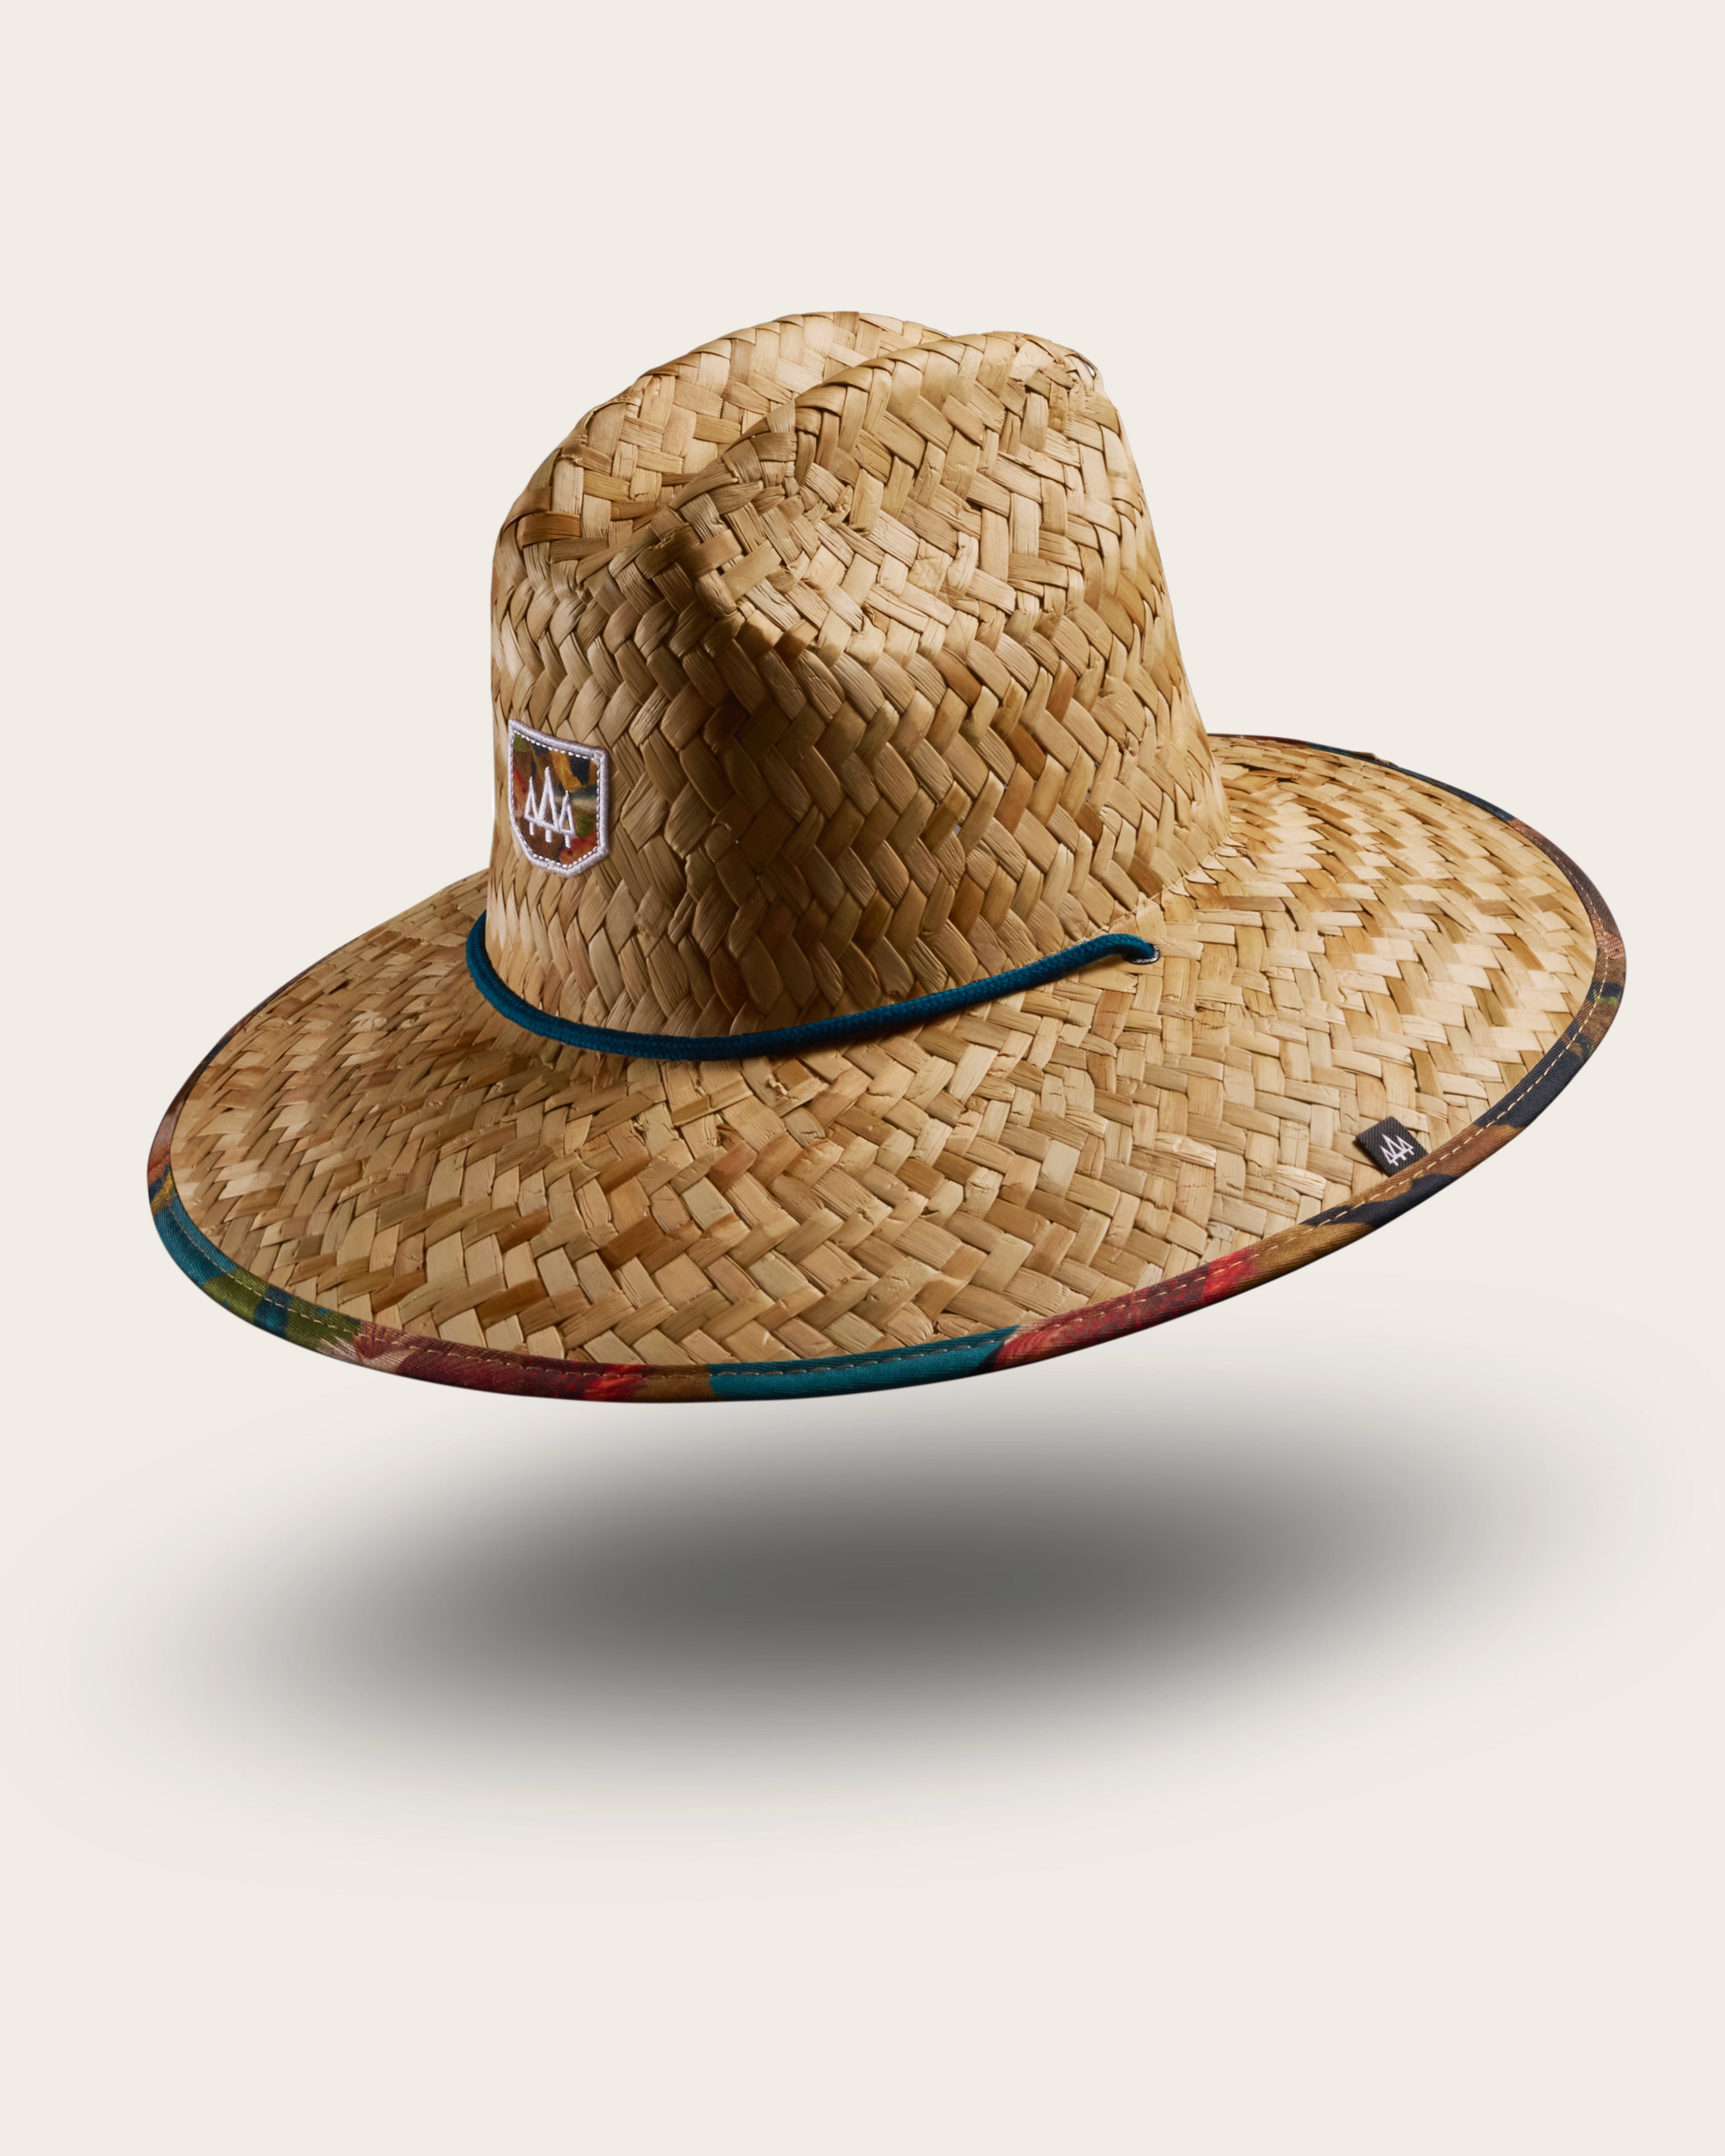 Mariner Straw Lifeguard Hat, Fish Print Straw Hat UPF 50+